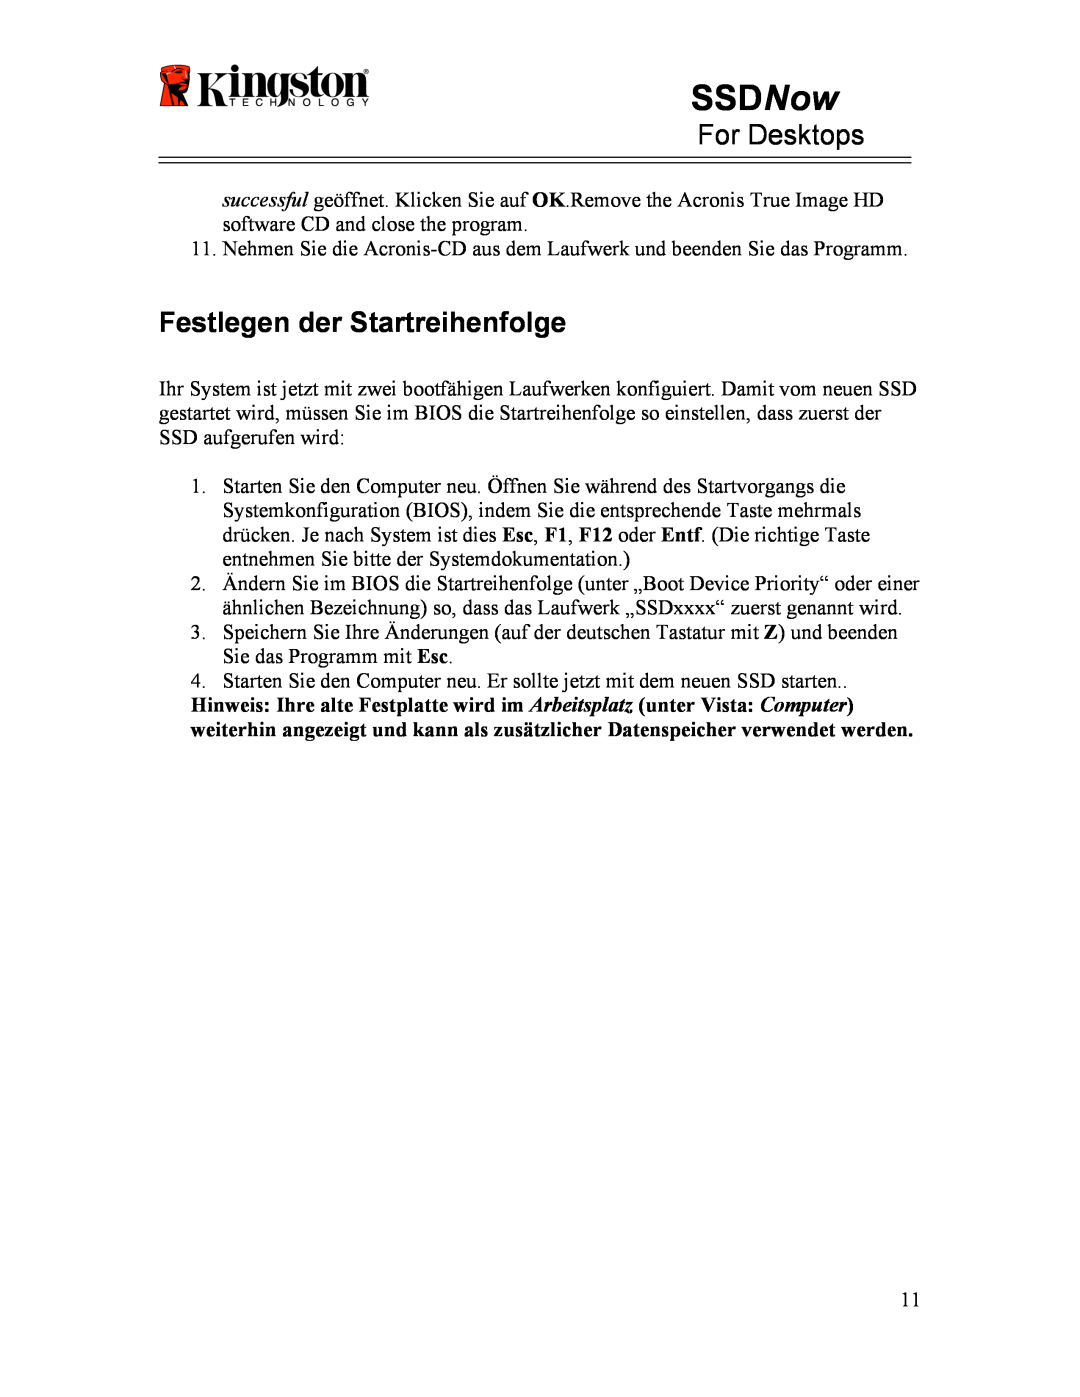 Kingston Technology 07-16-2009 manual Festlegen der Startreihenfolge, SSDNow, For Desktops 